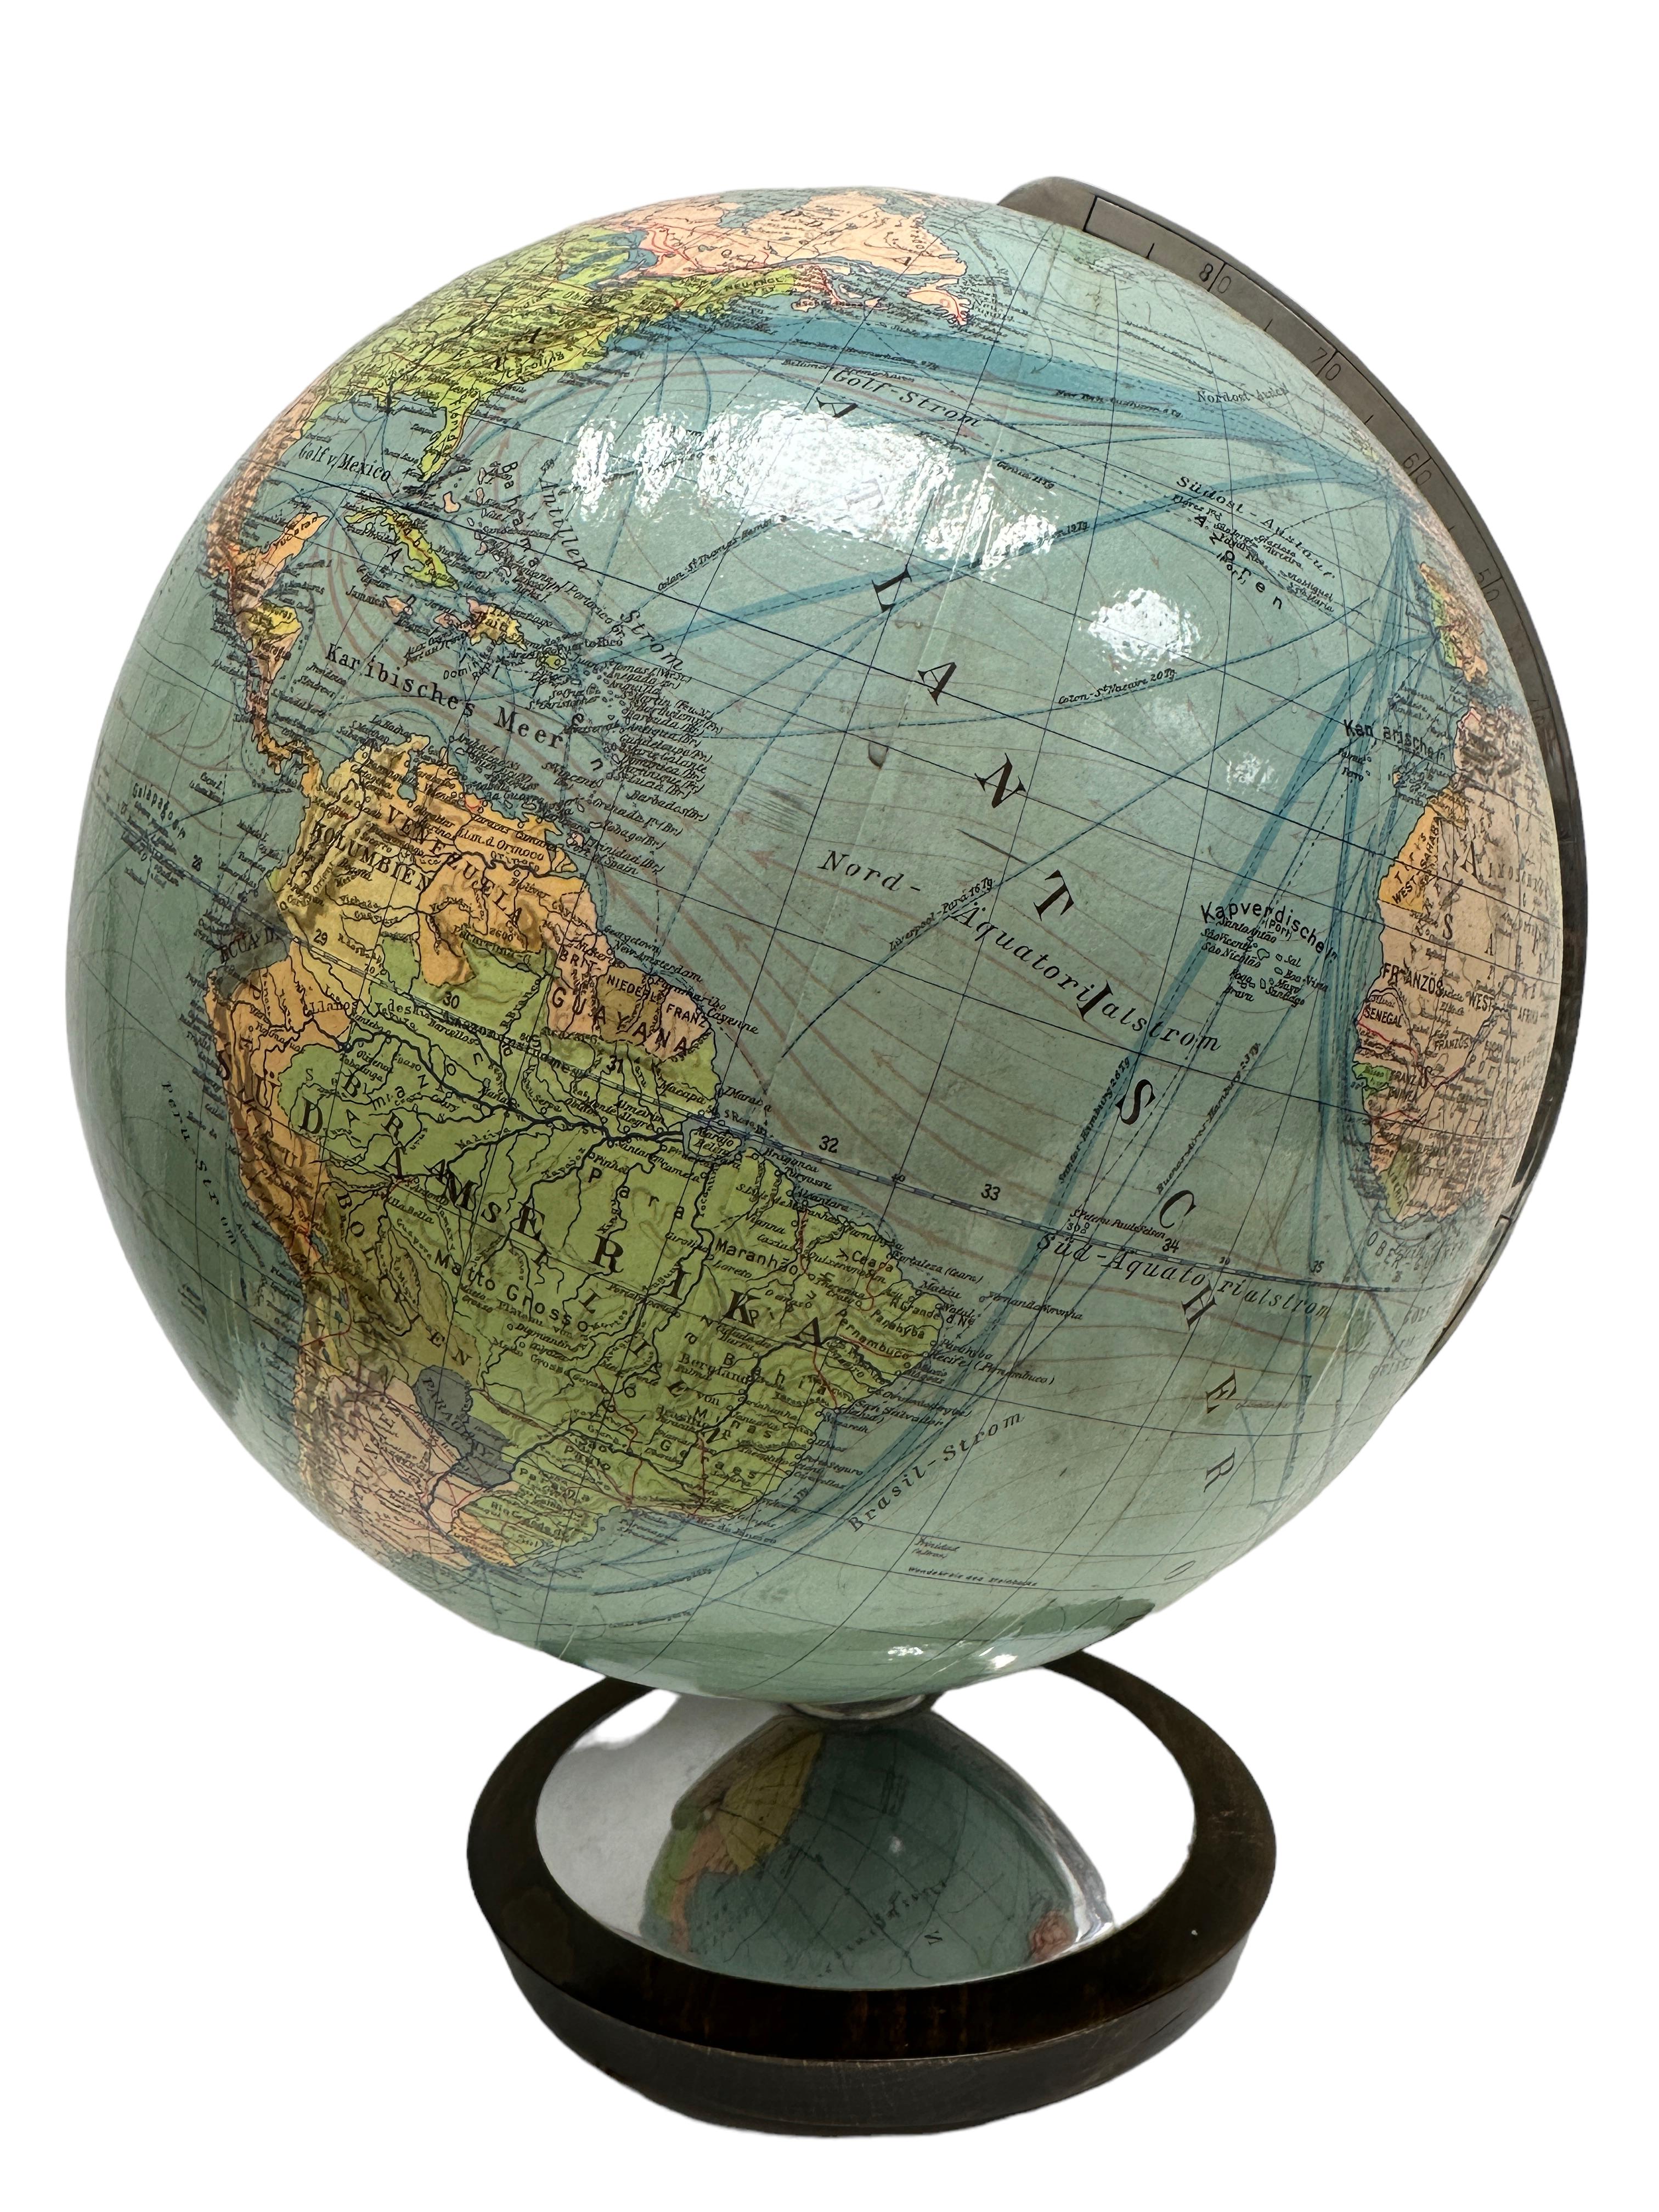 Vintage schöne 20. Jahrhundert Globus. Hergestellt vom deutschen Hersteller Oestergaard, Berlin, Deutschland. Es ist aus lithographiertem Papier Globus mit einem massiven Holz und Metall-Basis, Aluminium-Knopf gemacht. Eine schöne Ergänzung für jede